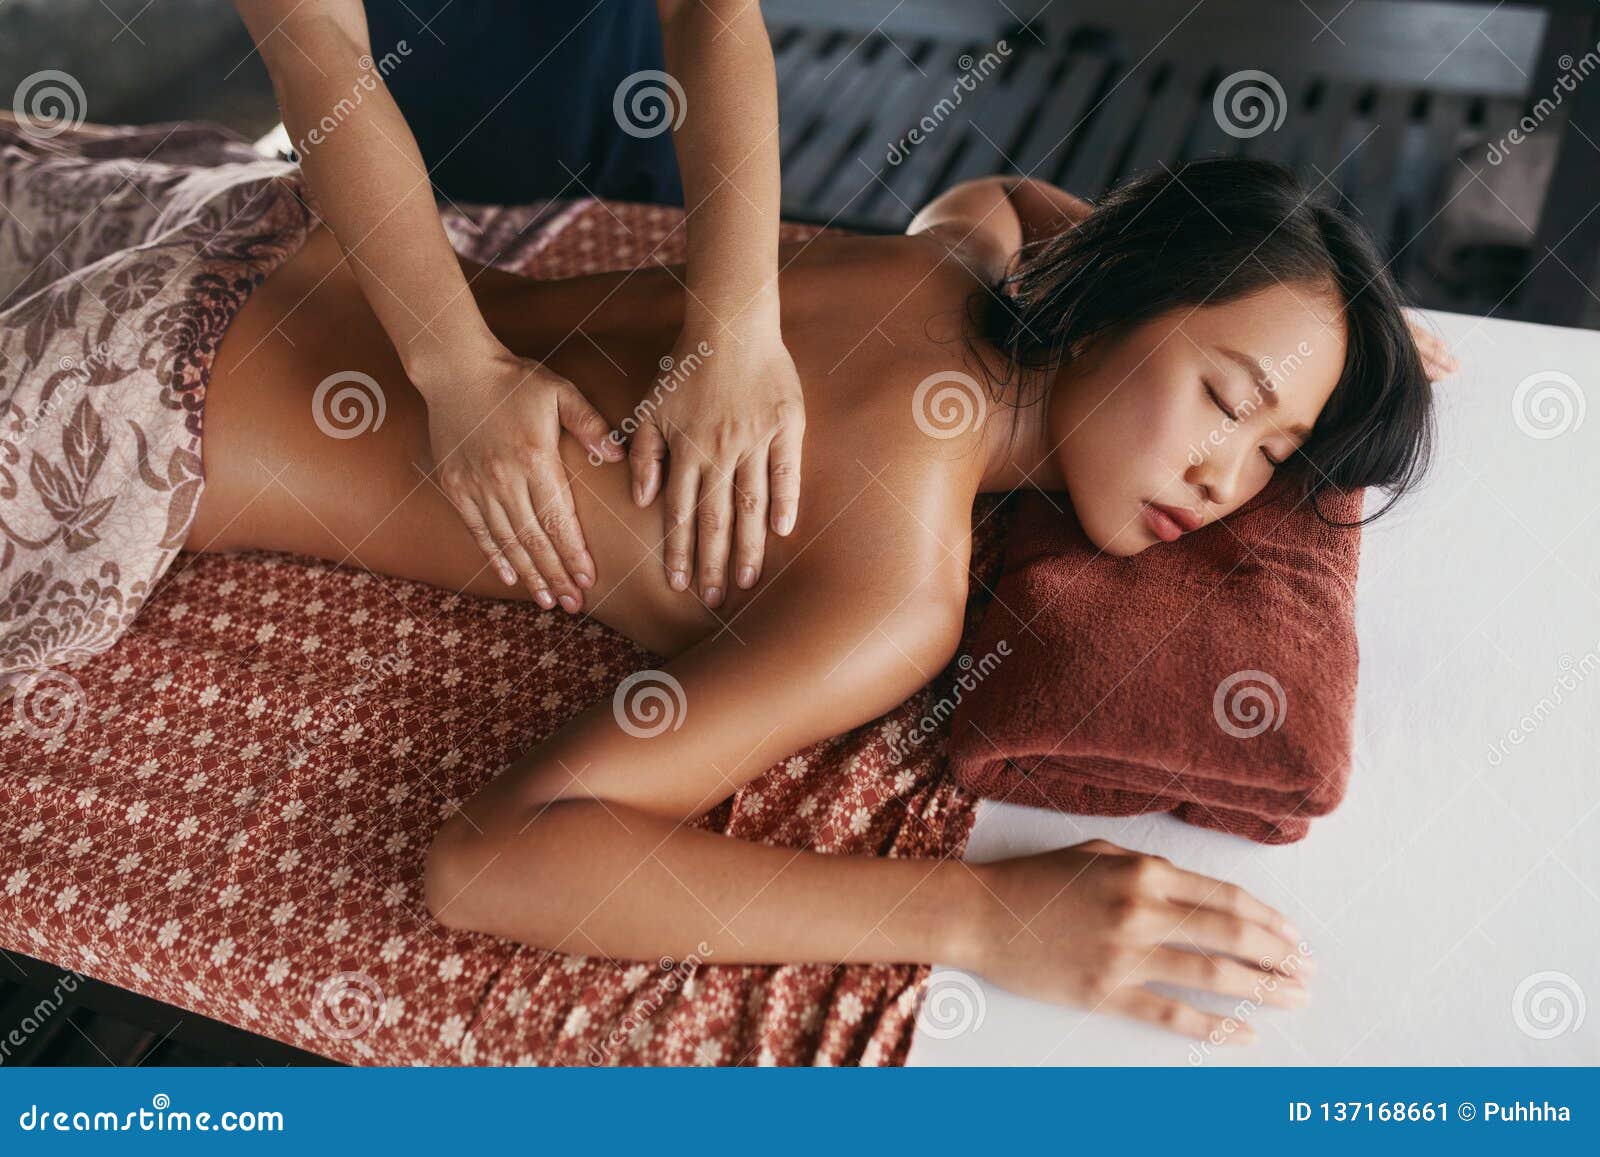 Asian massage back page